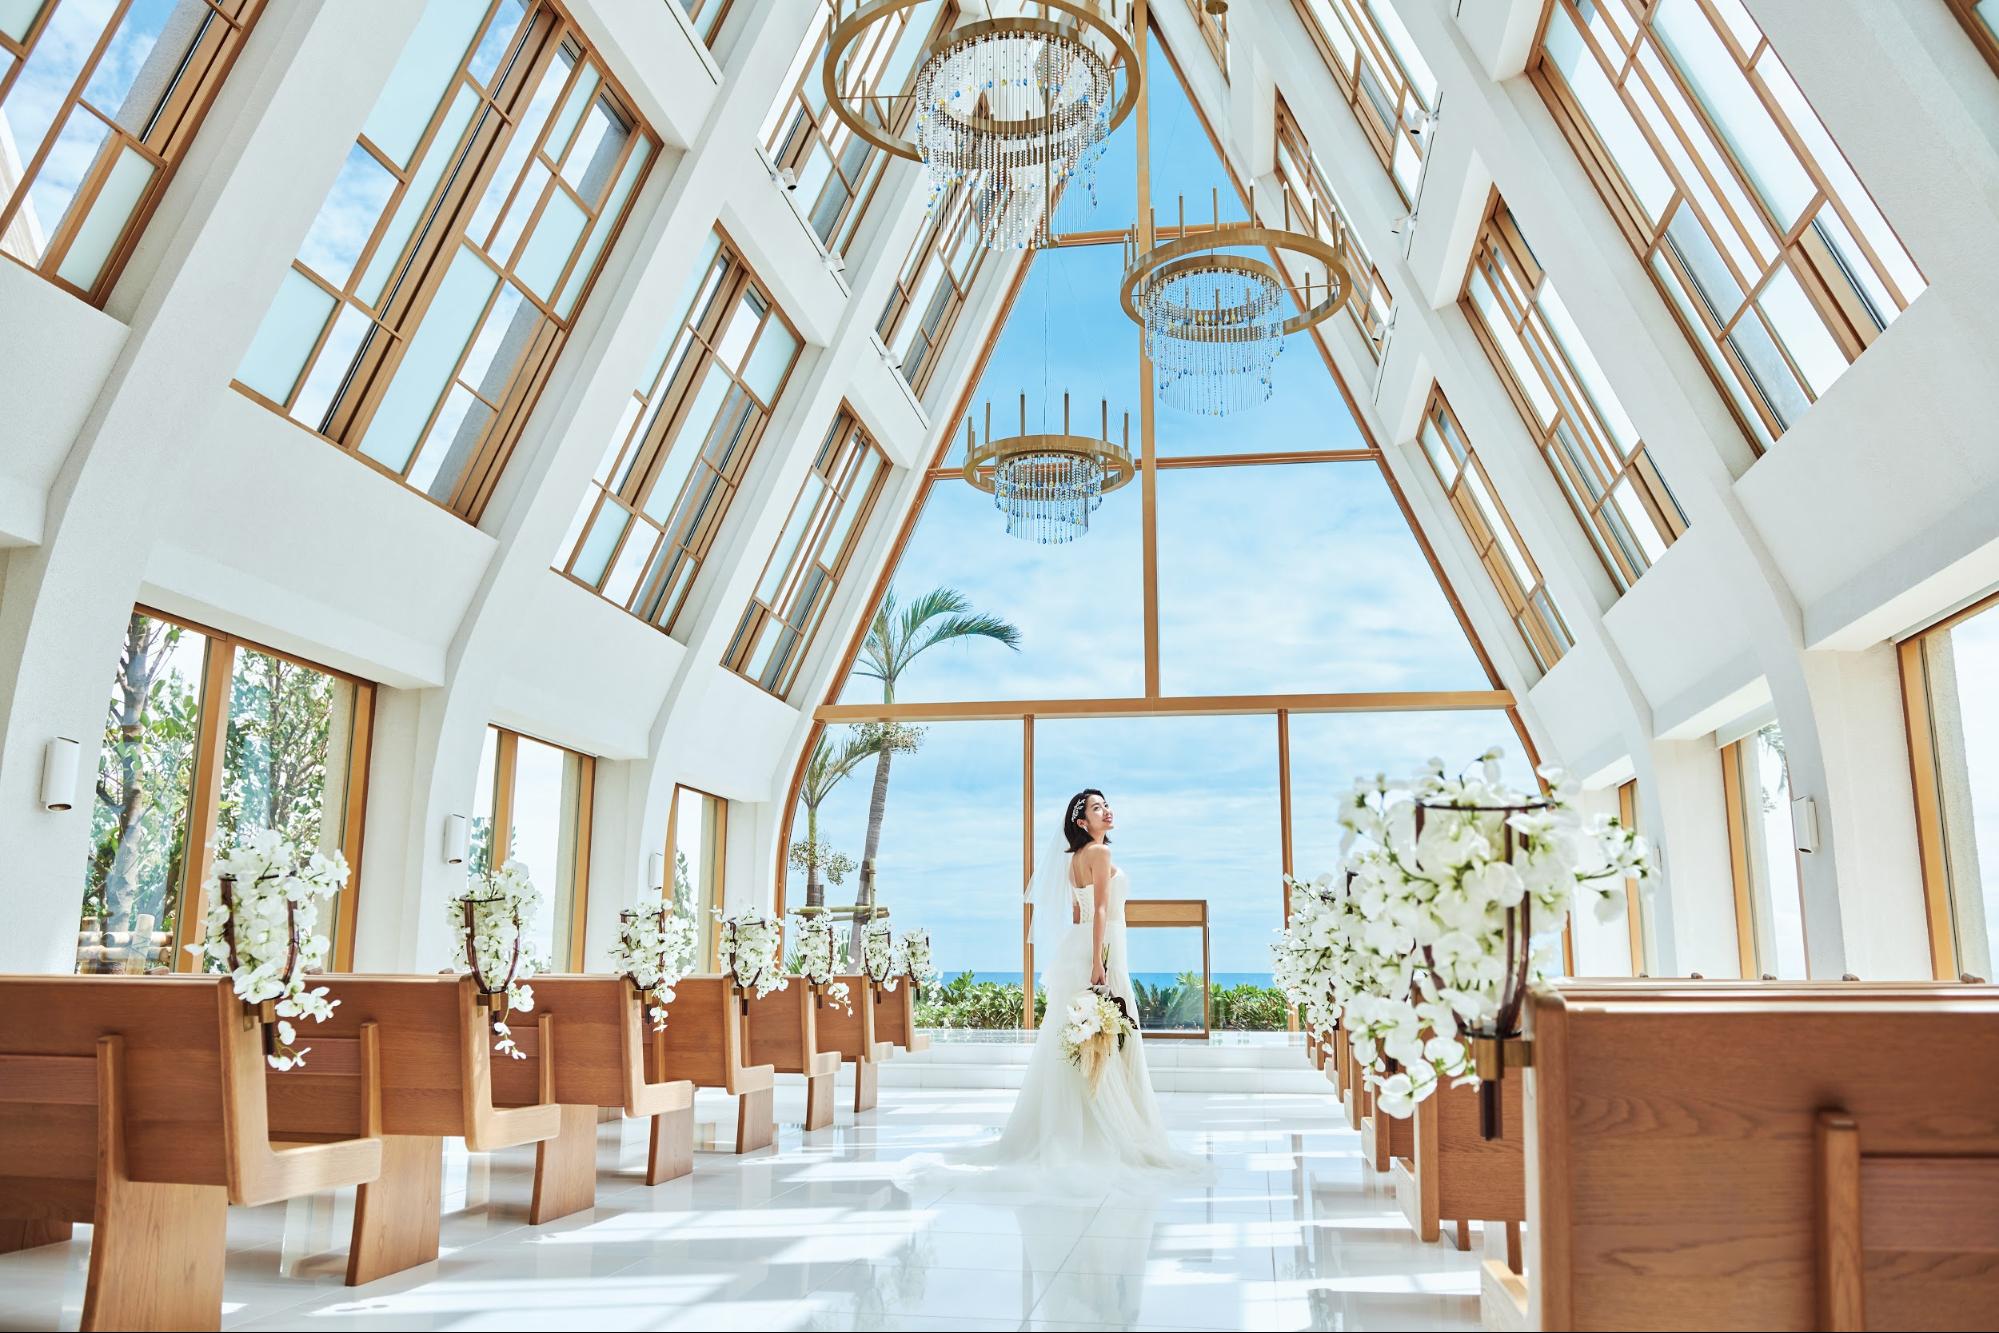 最新版 沖縄の結婚式場 海が見えるチャペル 人気ランキング10 沖縄ウエディングまとめ 沖縄リゾート専門の結婚式情報サイト